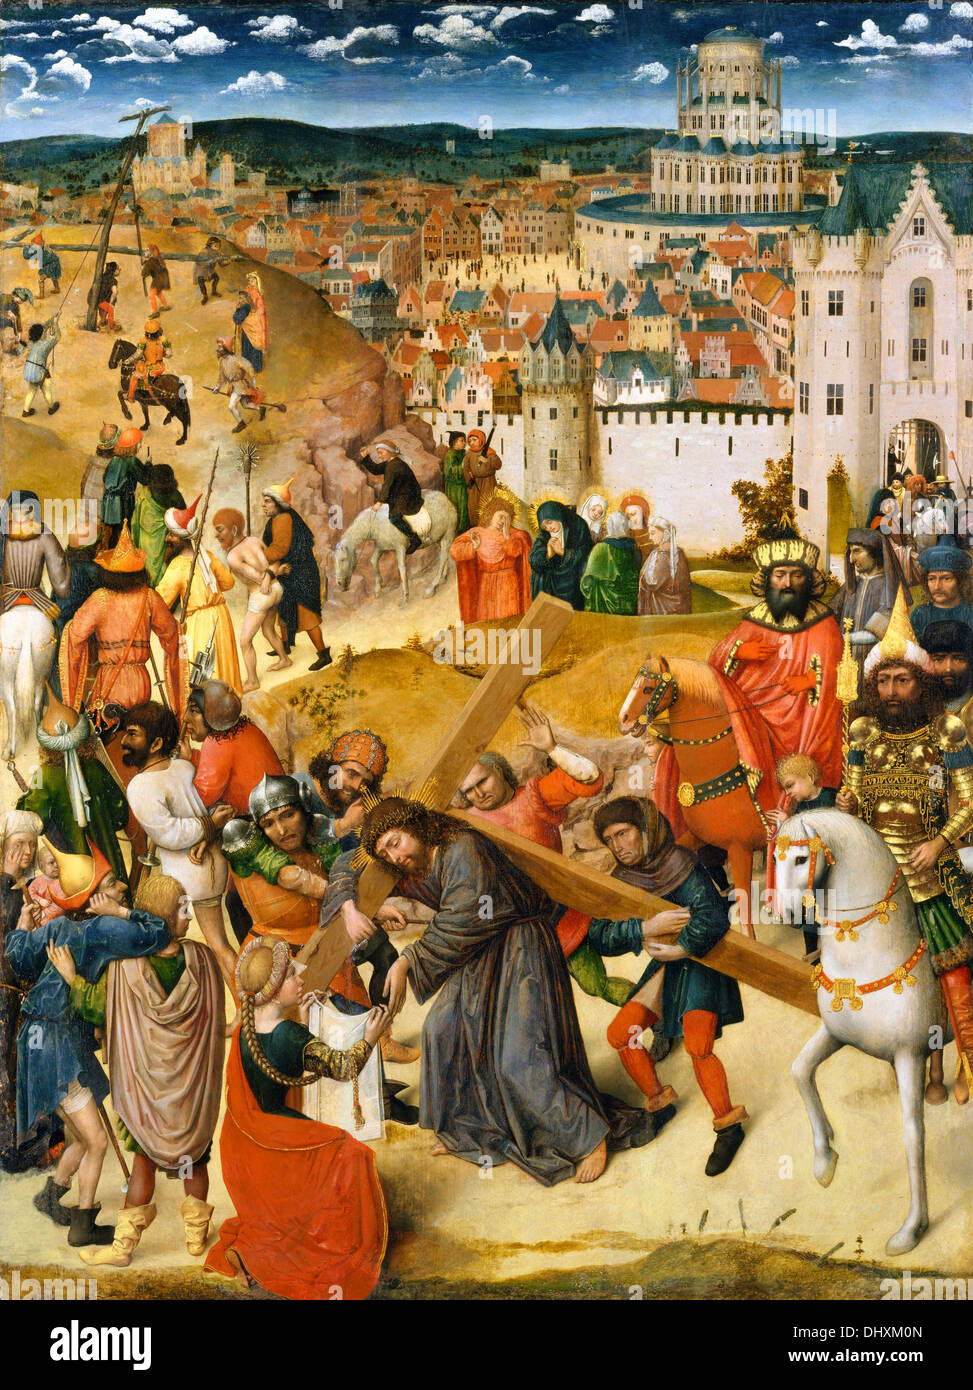 Le Christ portant la croix - Nord par peintre hollandais inconnu 1470 Banque D'Images